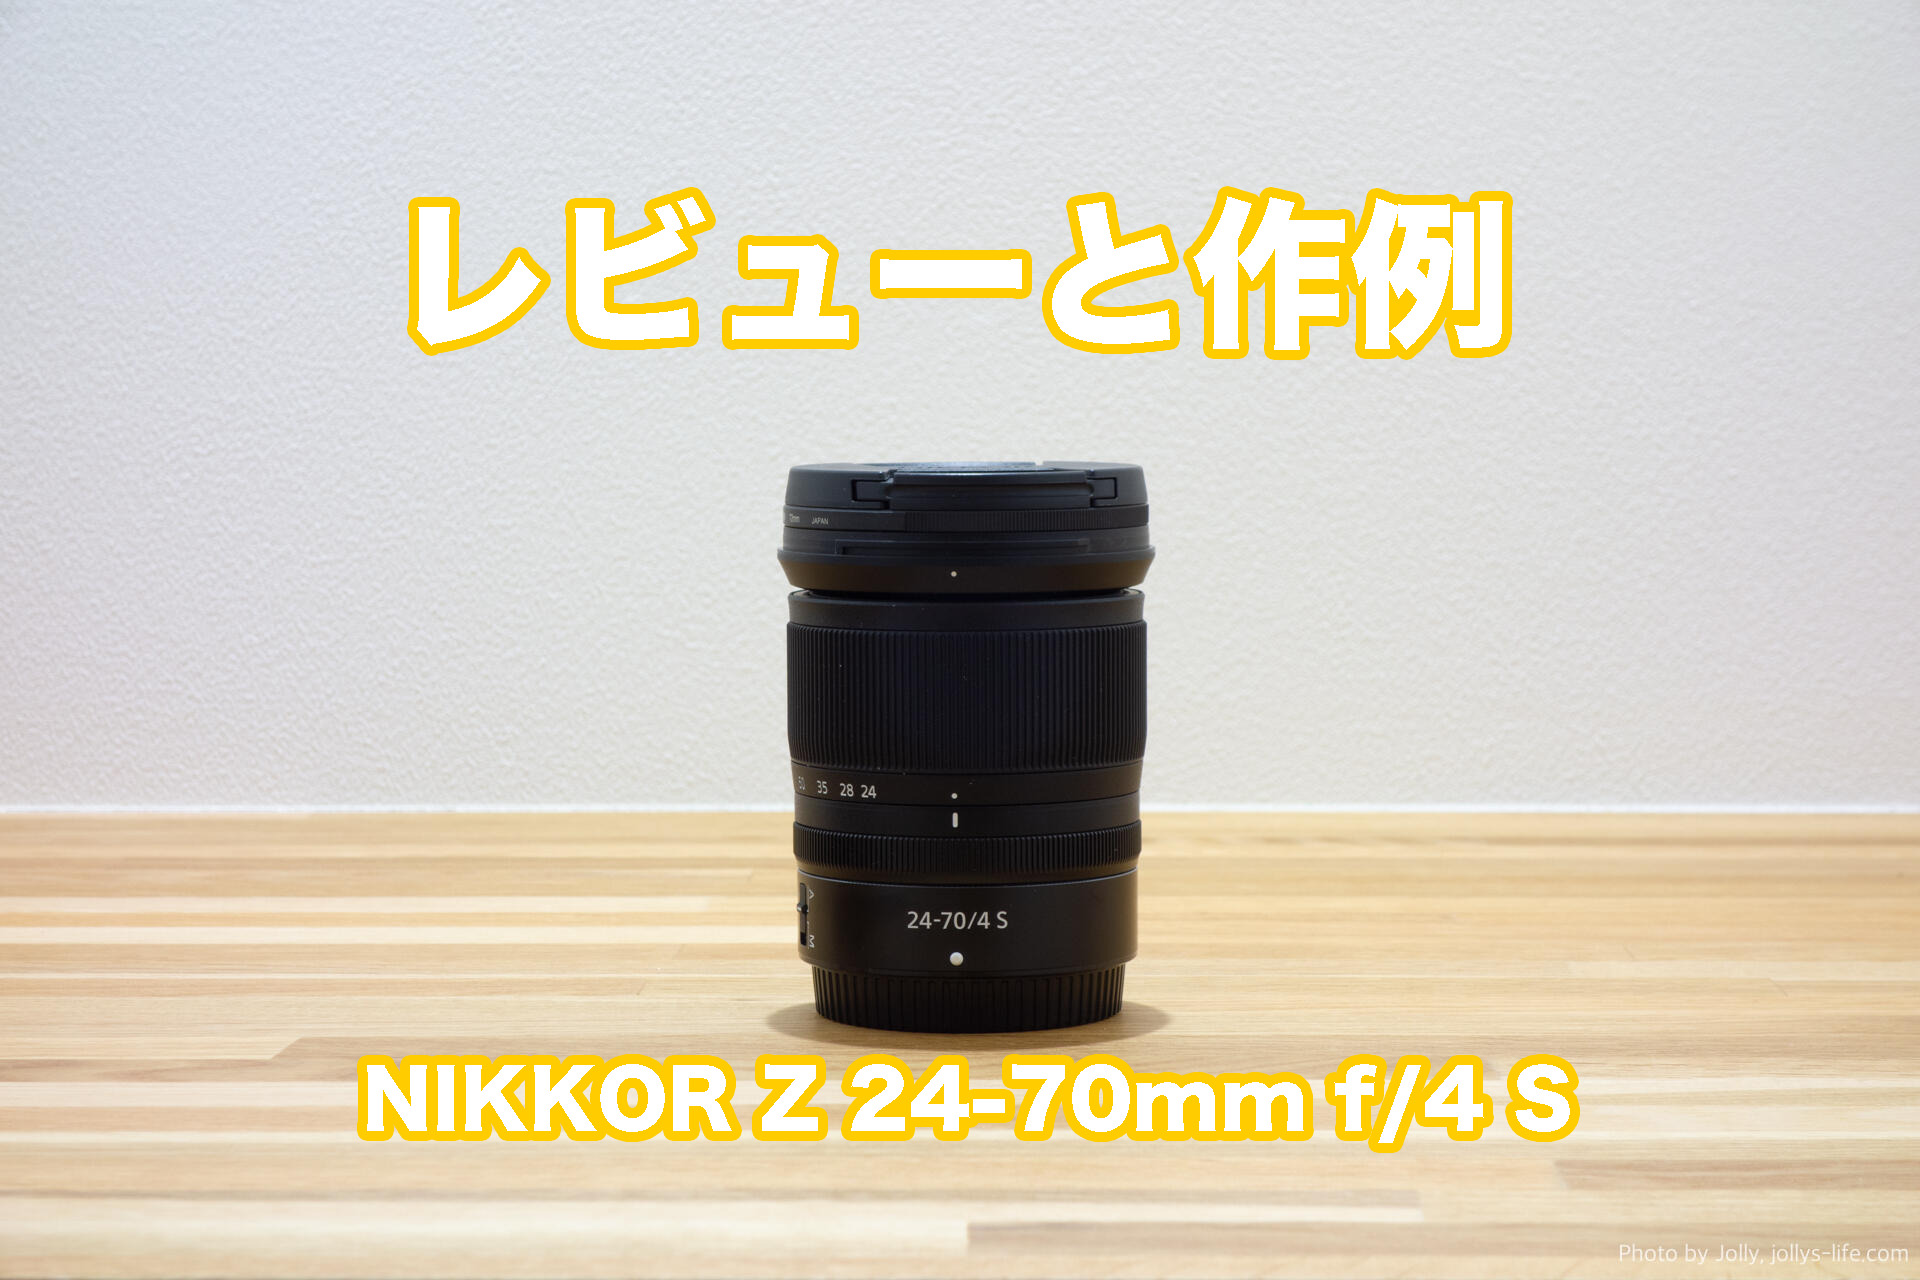 Nikon Nikkor Z 24-70mm f4 S + おまけ www.krzysztofbialy.com